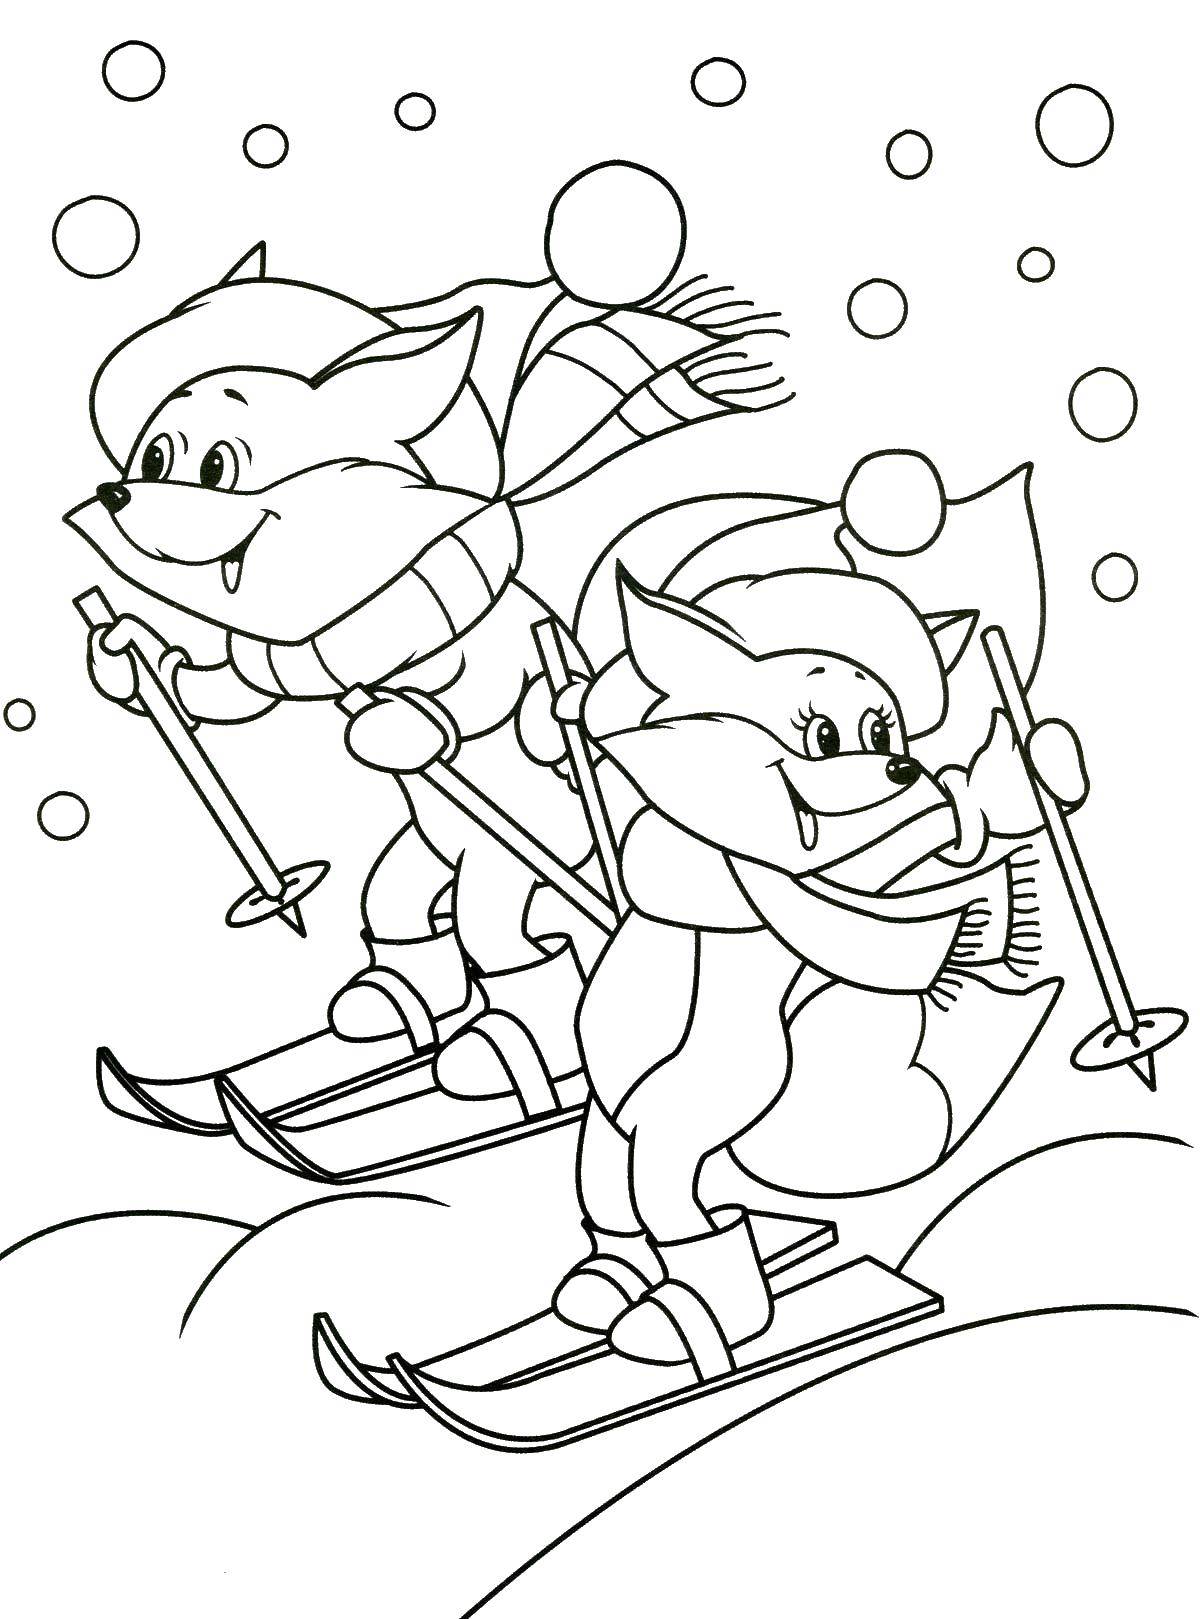 Раскраска зимнего леса с лисичками и лыжами (зима, лисички, лыжи)